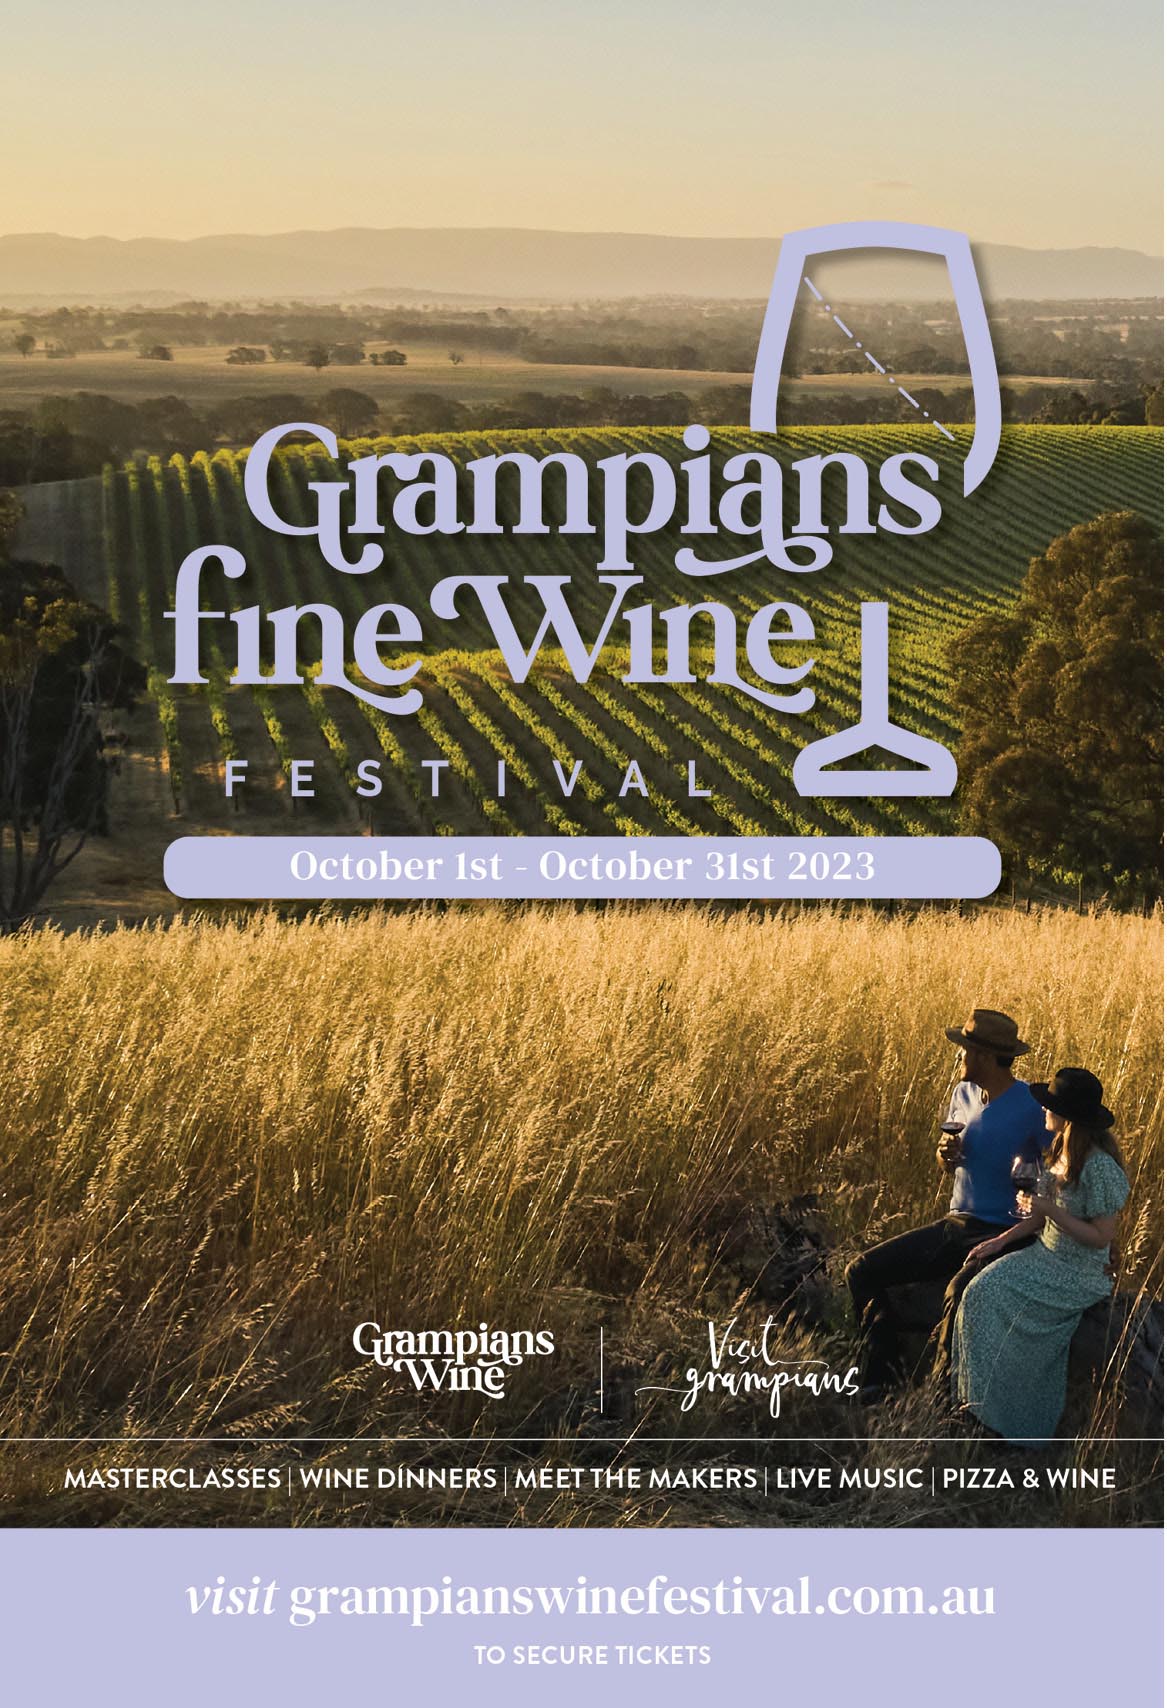 Grampians_Fine_Wine_Festival_home